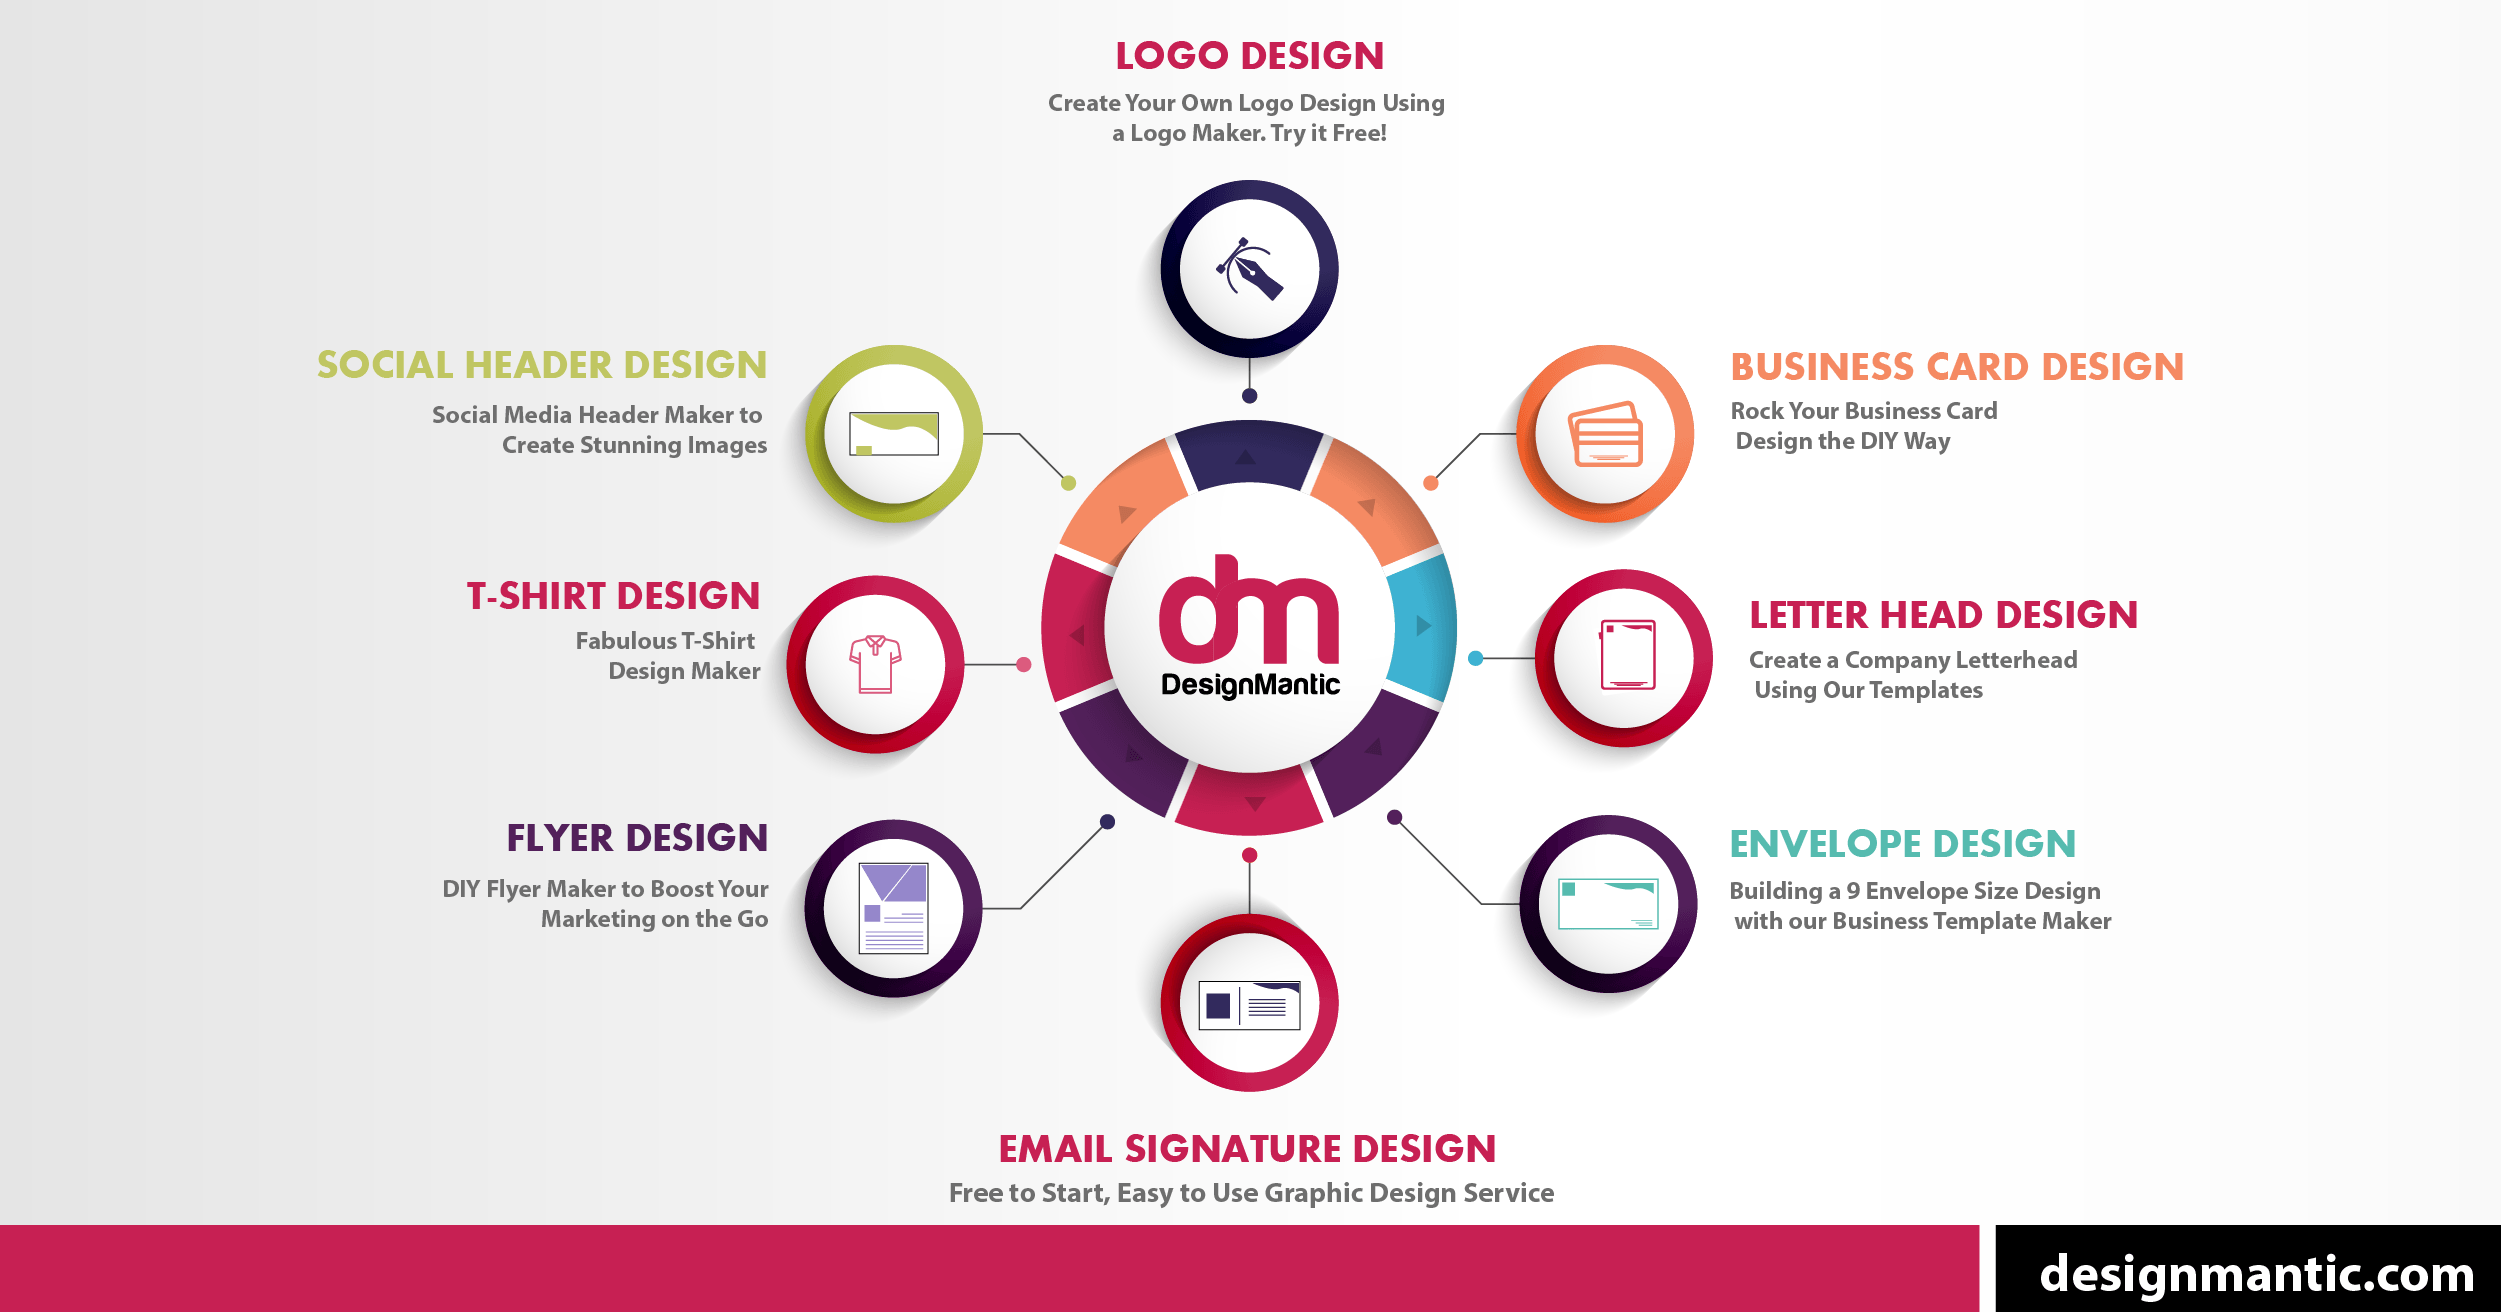 Card Logo - Logo Design Using AI Logo Maker Tool | DesignMantic: The Design Shop